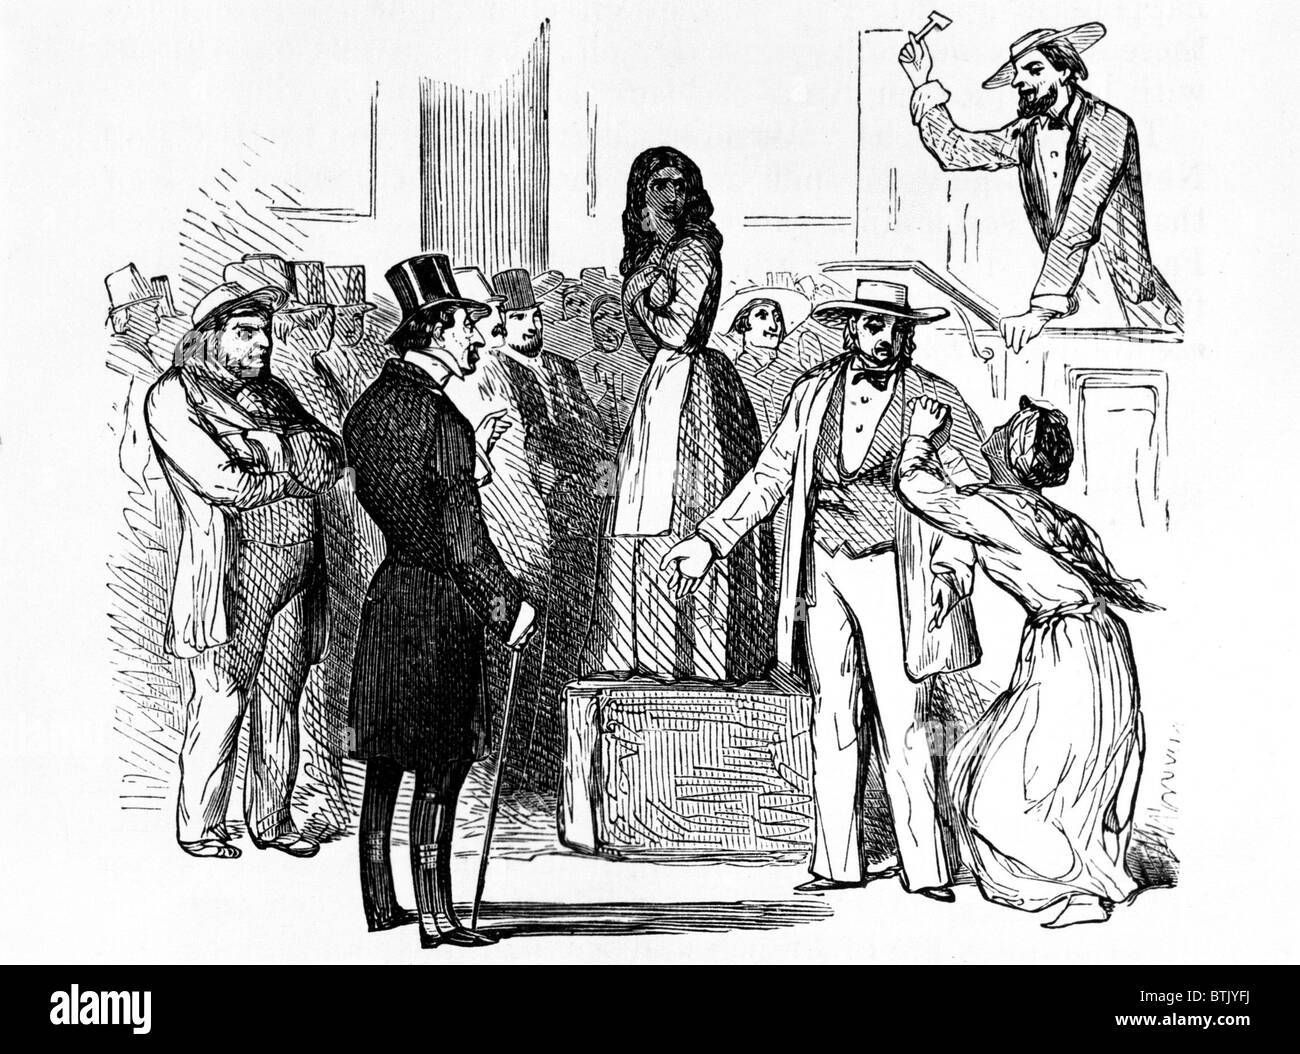 Vente aux enchères d'esclaves dans le sud des États-Unis, début des années 1800 Banque D'Images